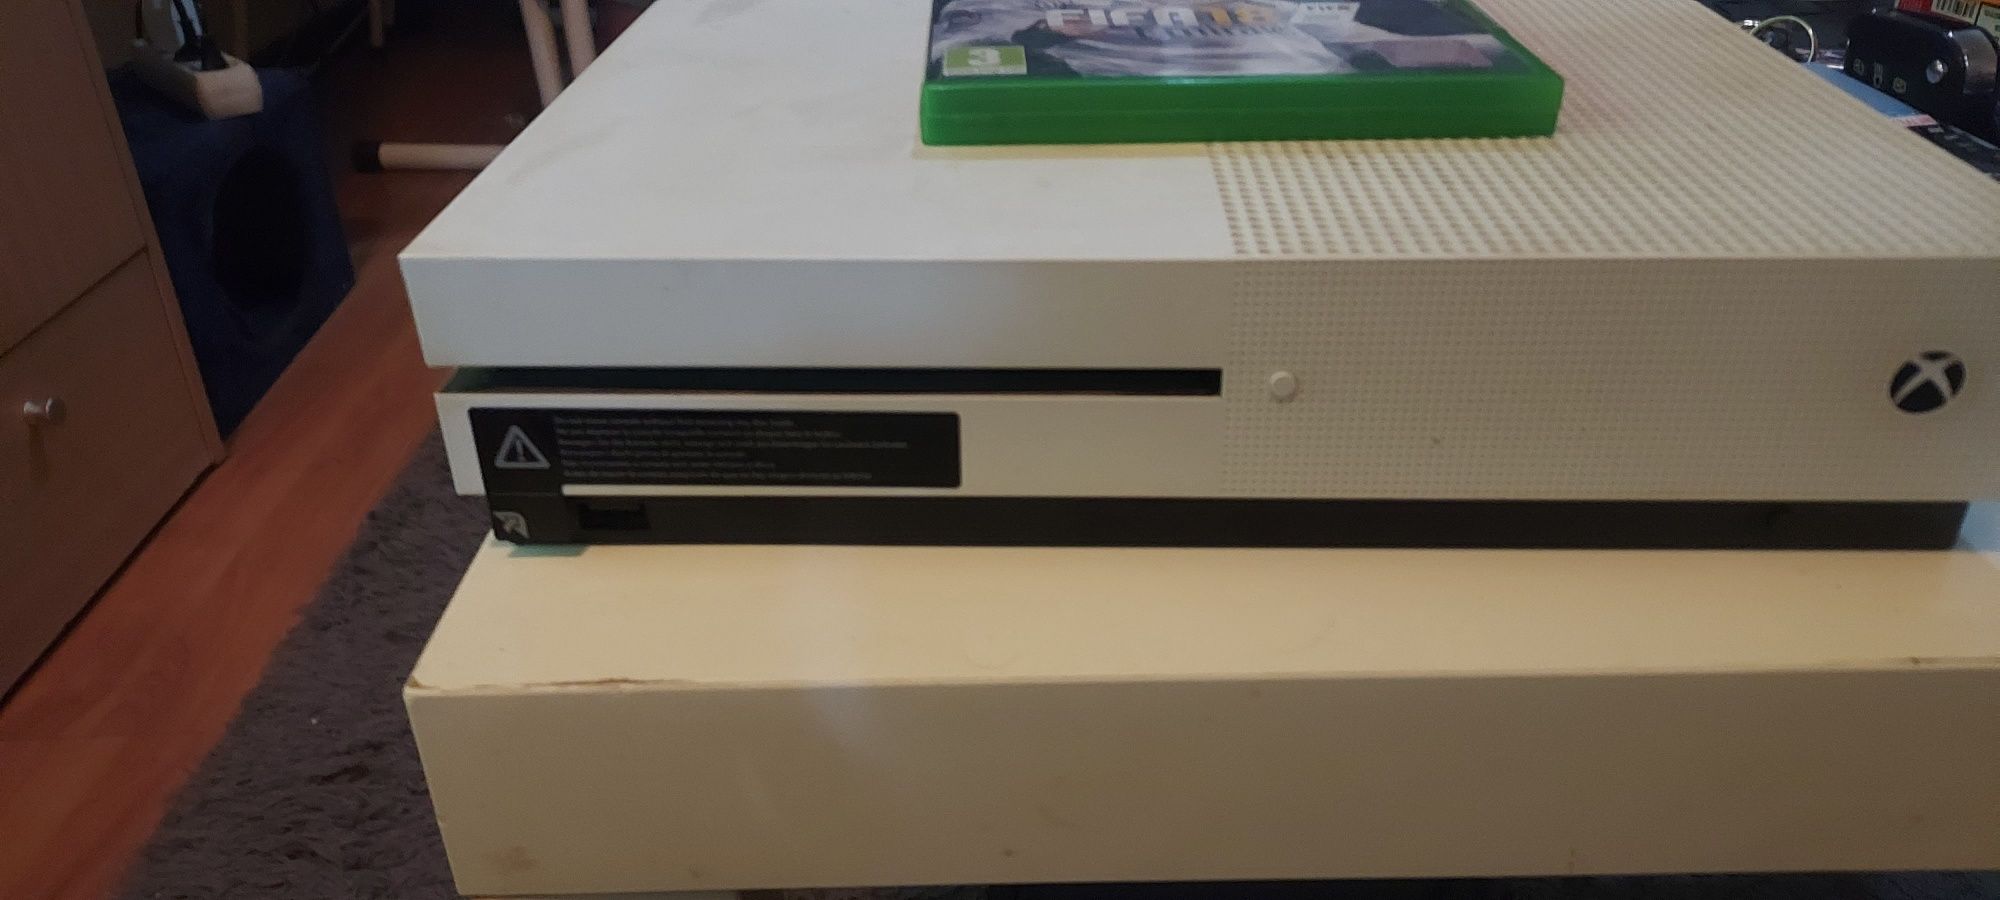 Xbox One S 500 GB com jogos e comandos